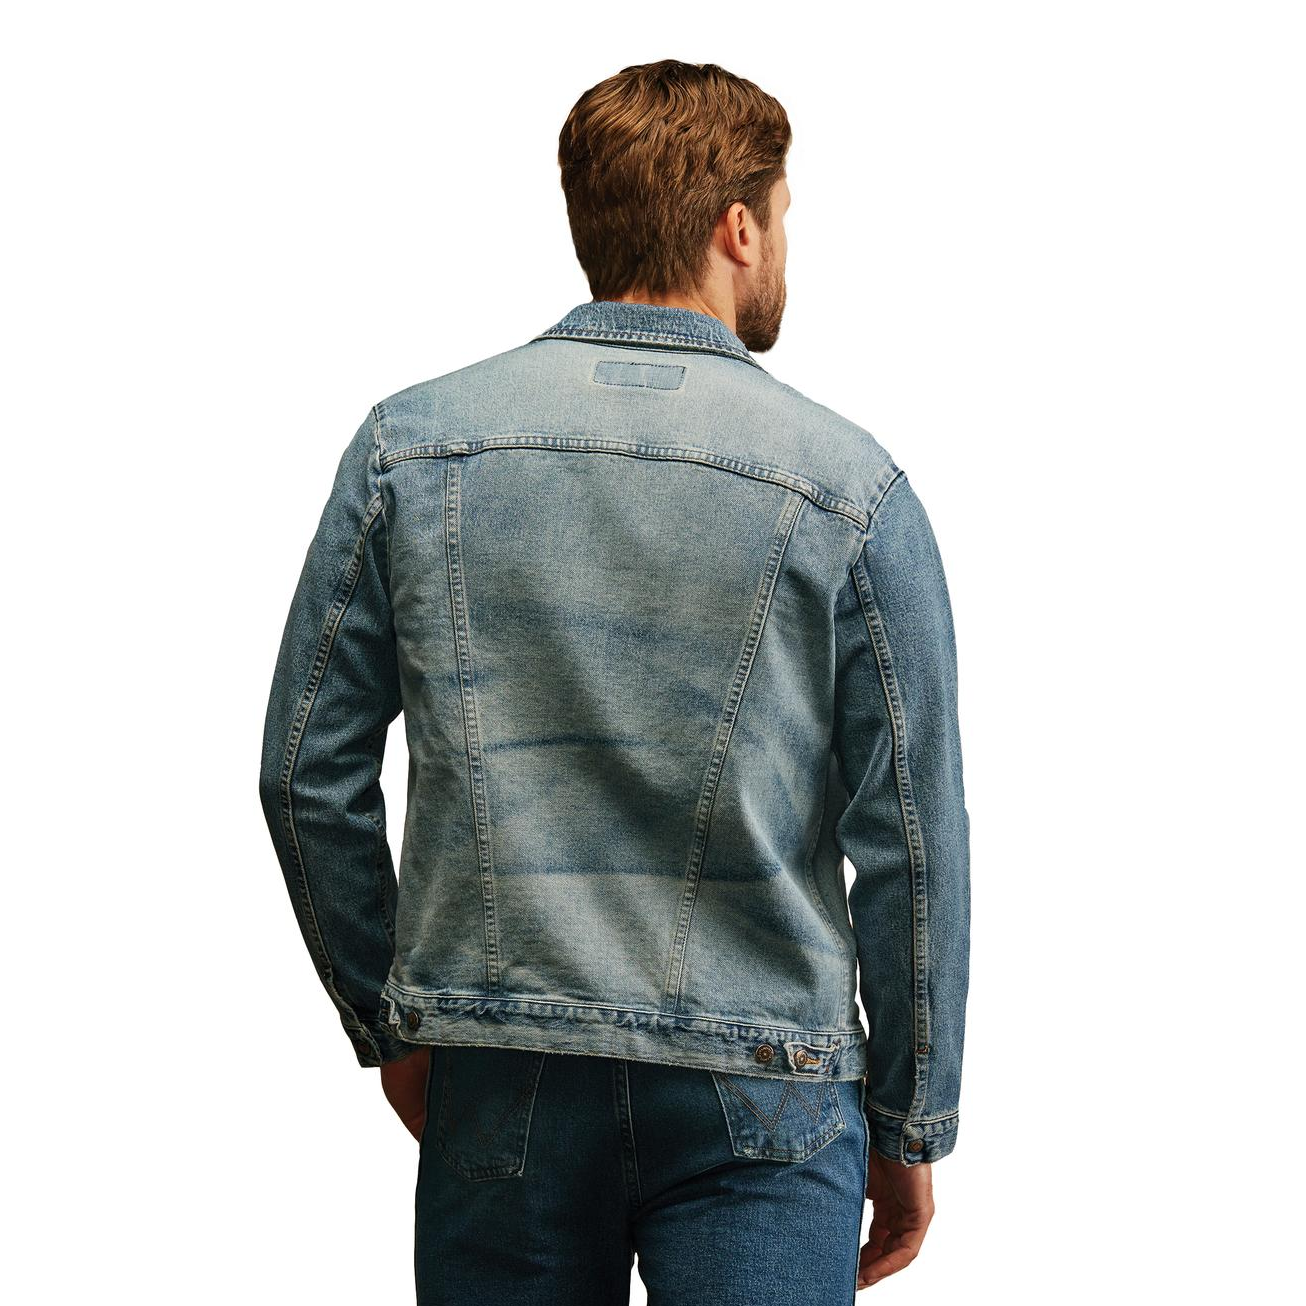 Wrangler Men's Vintage Inspired Denim Jacket - Antique Blue